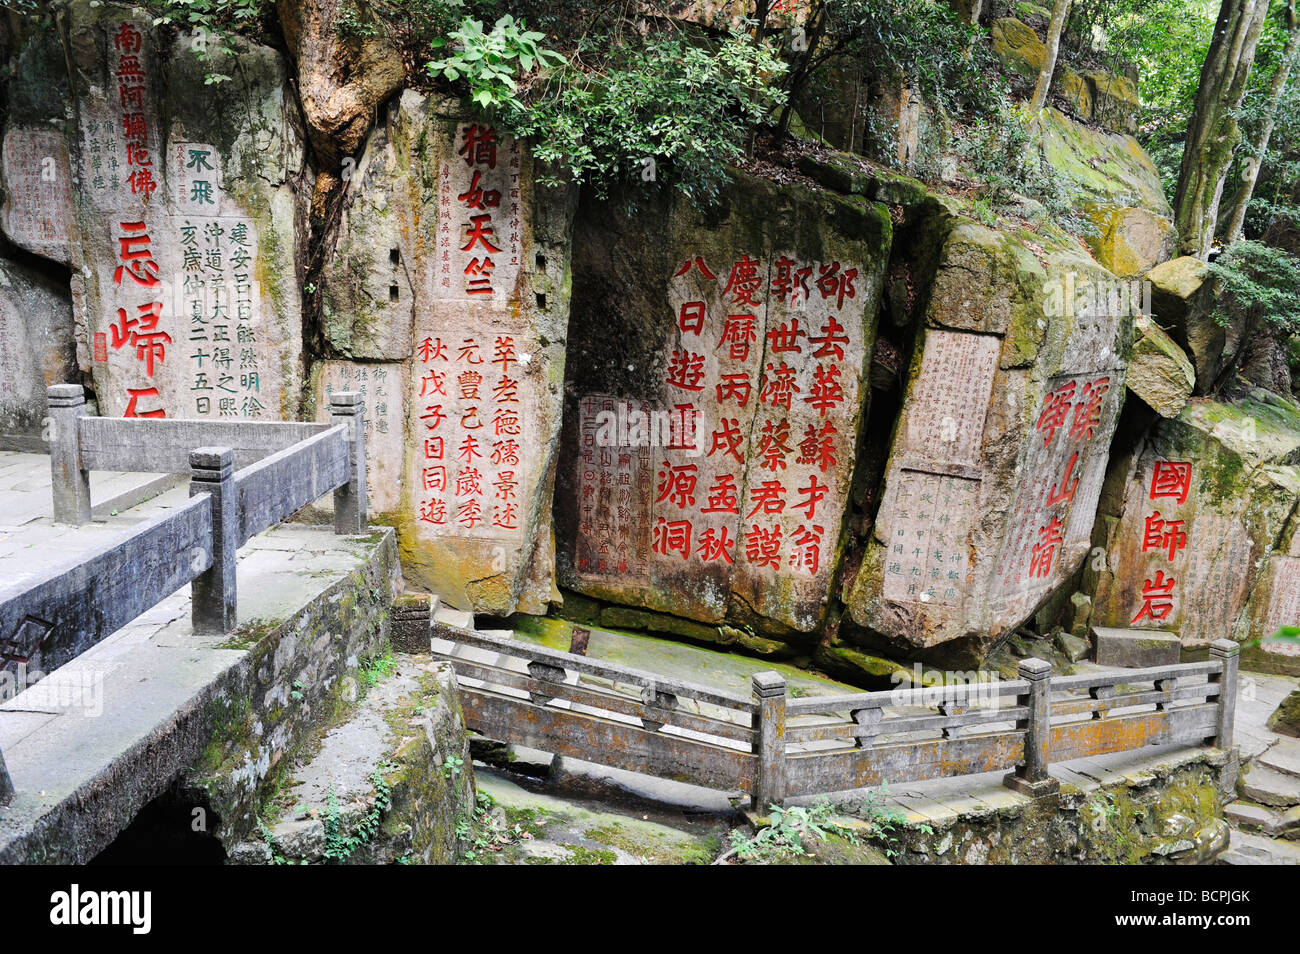 Calligraphy stone carving in Gushan Yongquan Temple, Fuzhou, Fujian Province, China Stock Photo